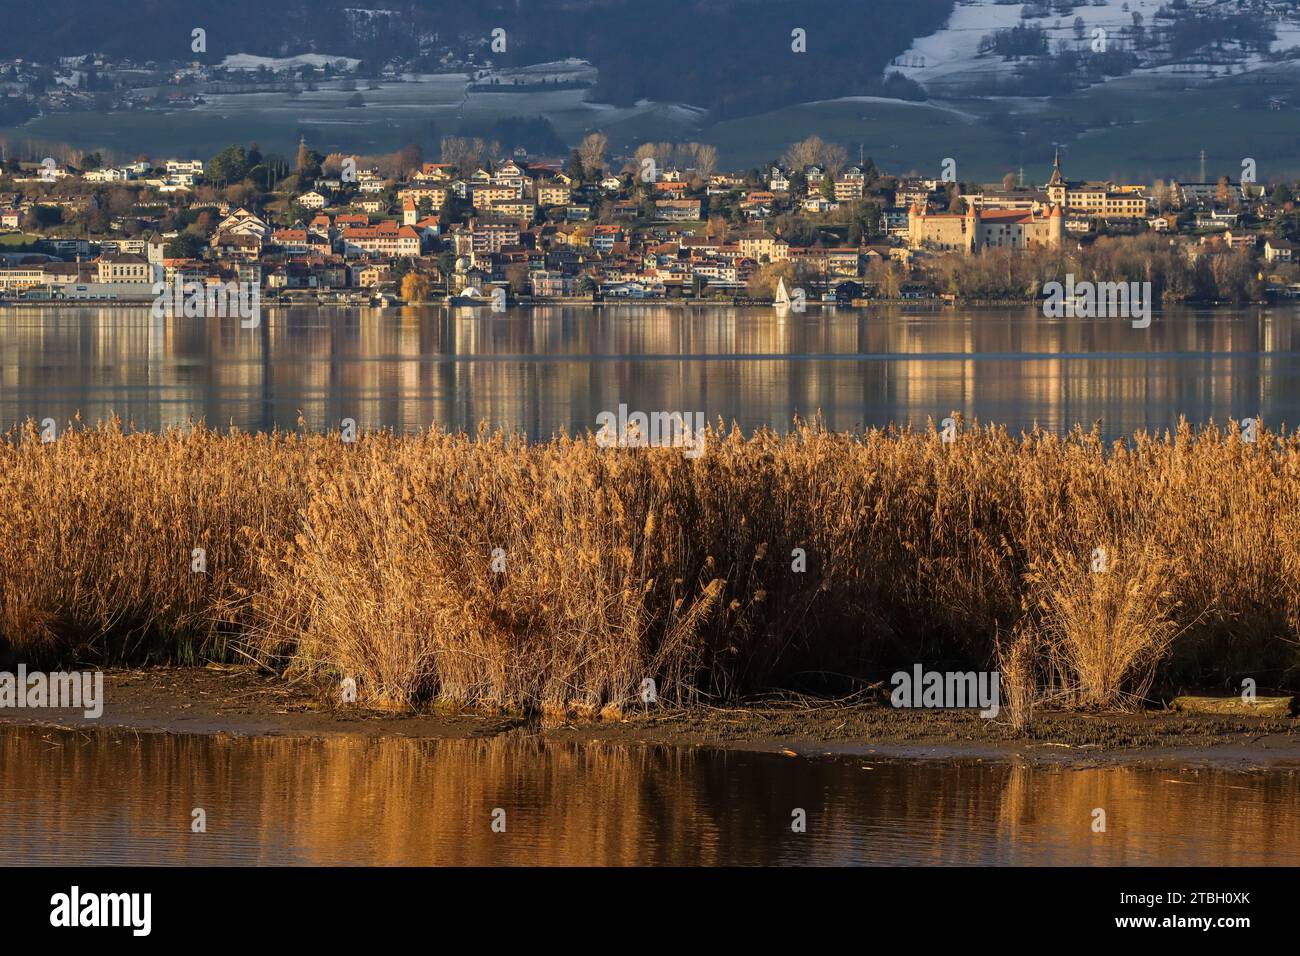 Ville et château de petit-fils au pied du jura, lac de Neuchâtel avec roseaux de la réserve naturelle de champ-Pittet dans la Grande Cariçaie, Suisse Banque D'Images